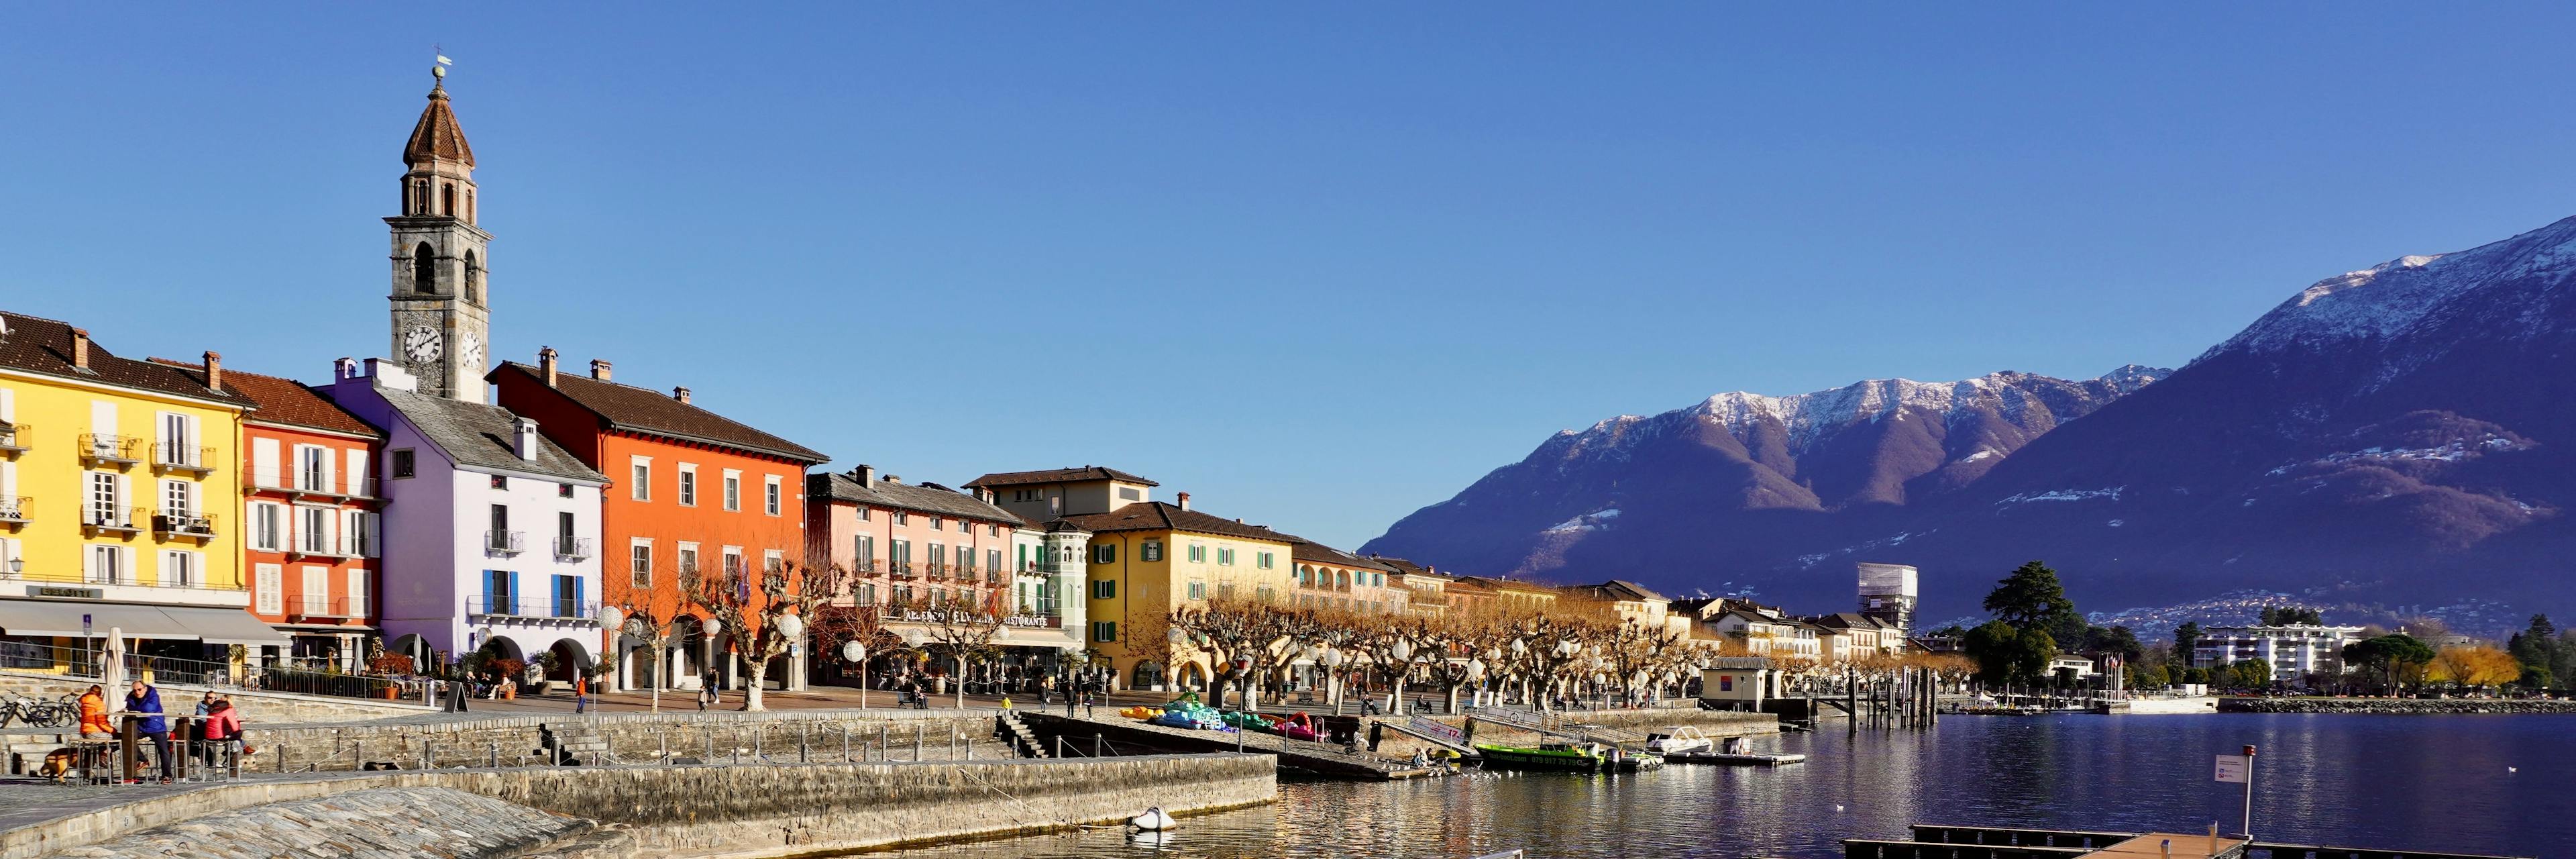 Una vista panoramica del centro storico di Ascona